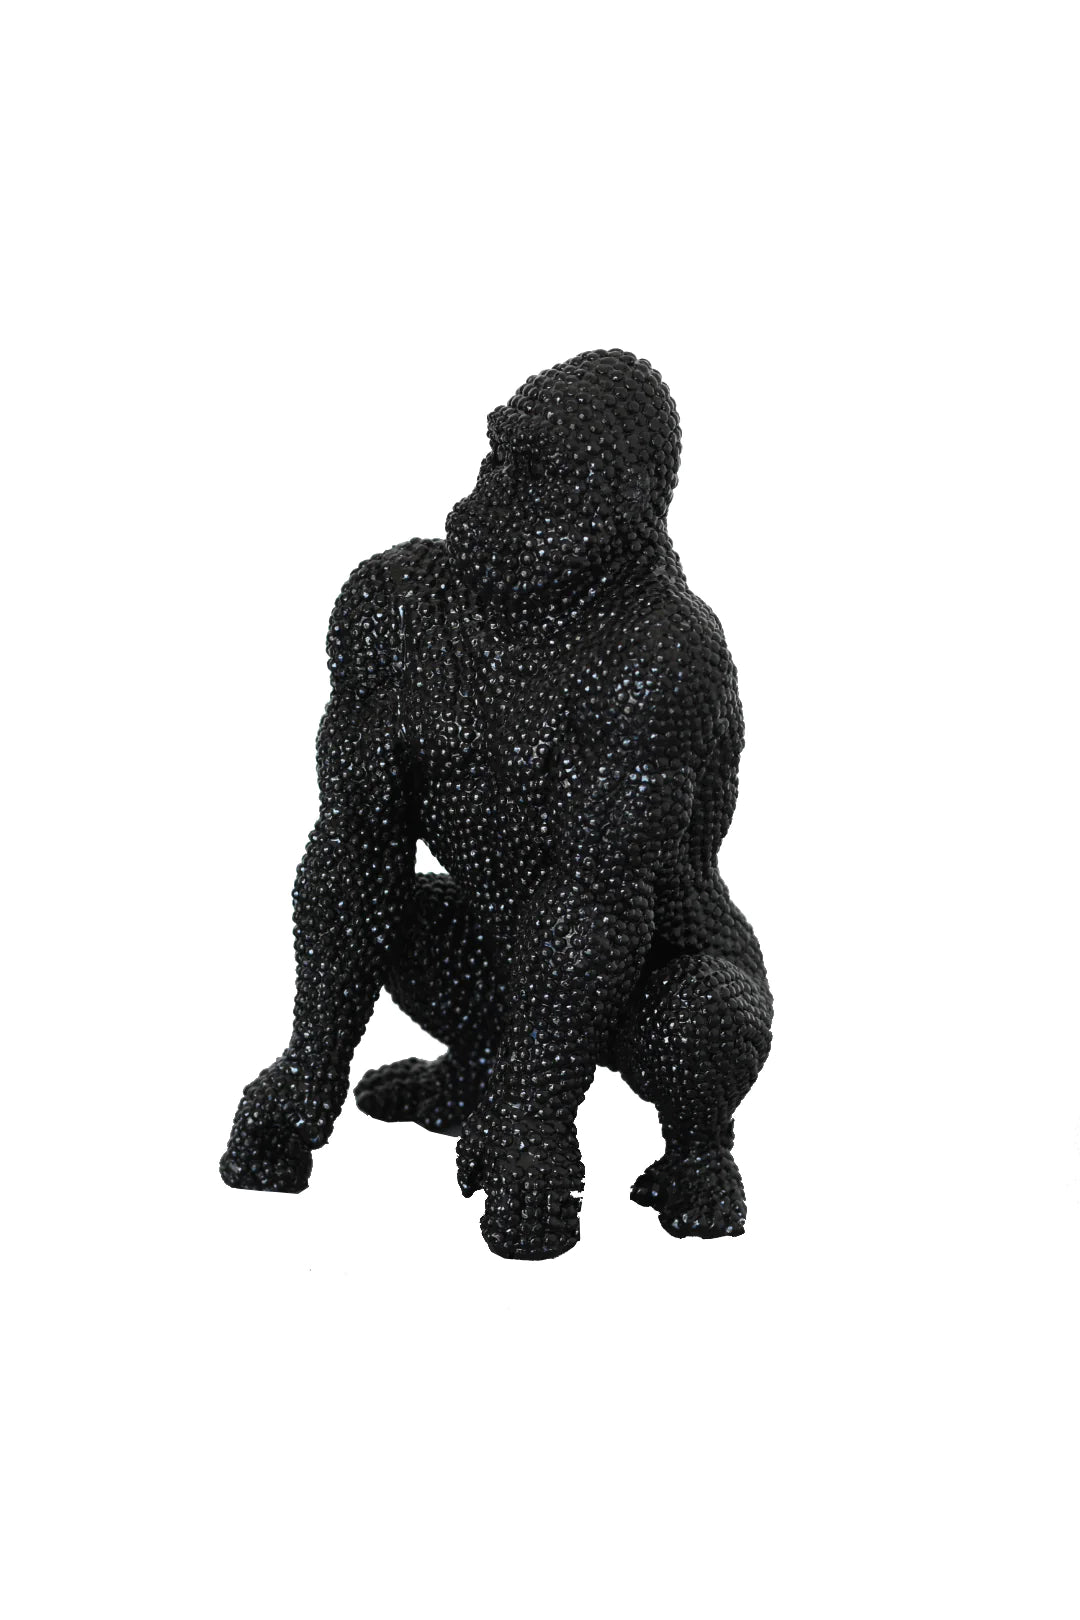 Black Gorilla